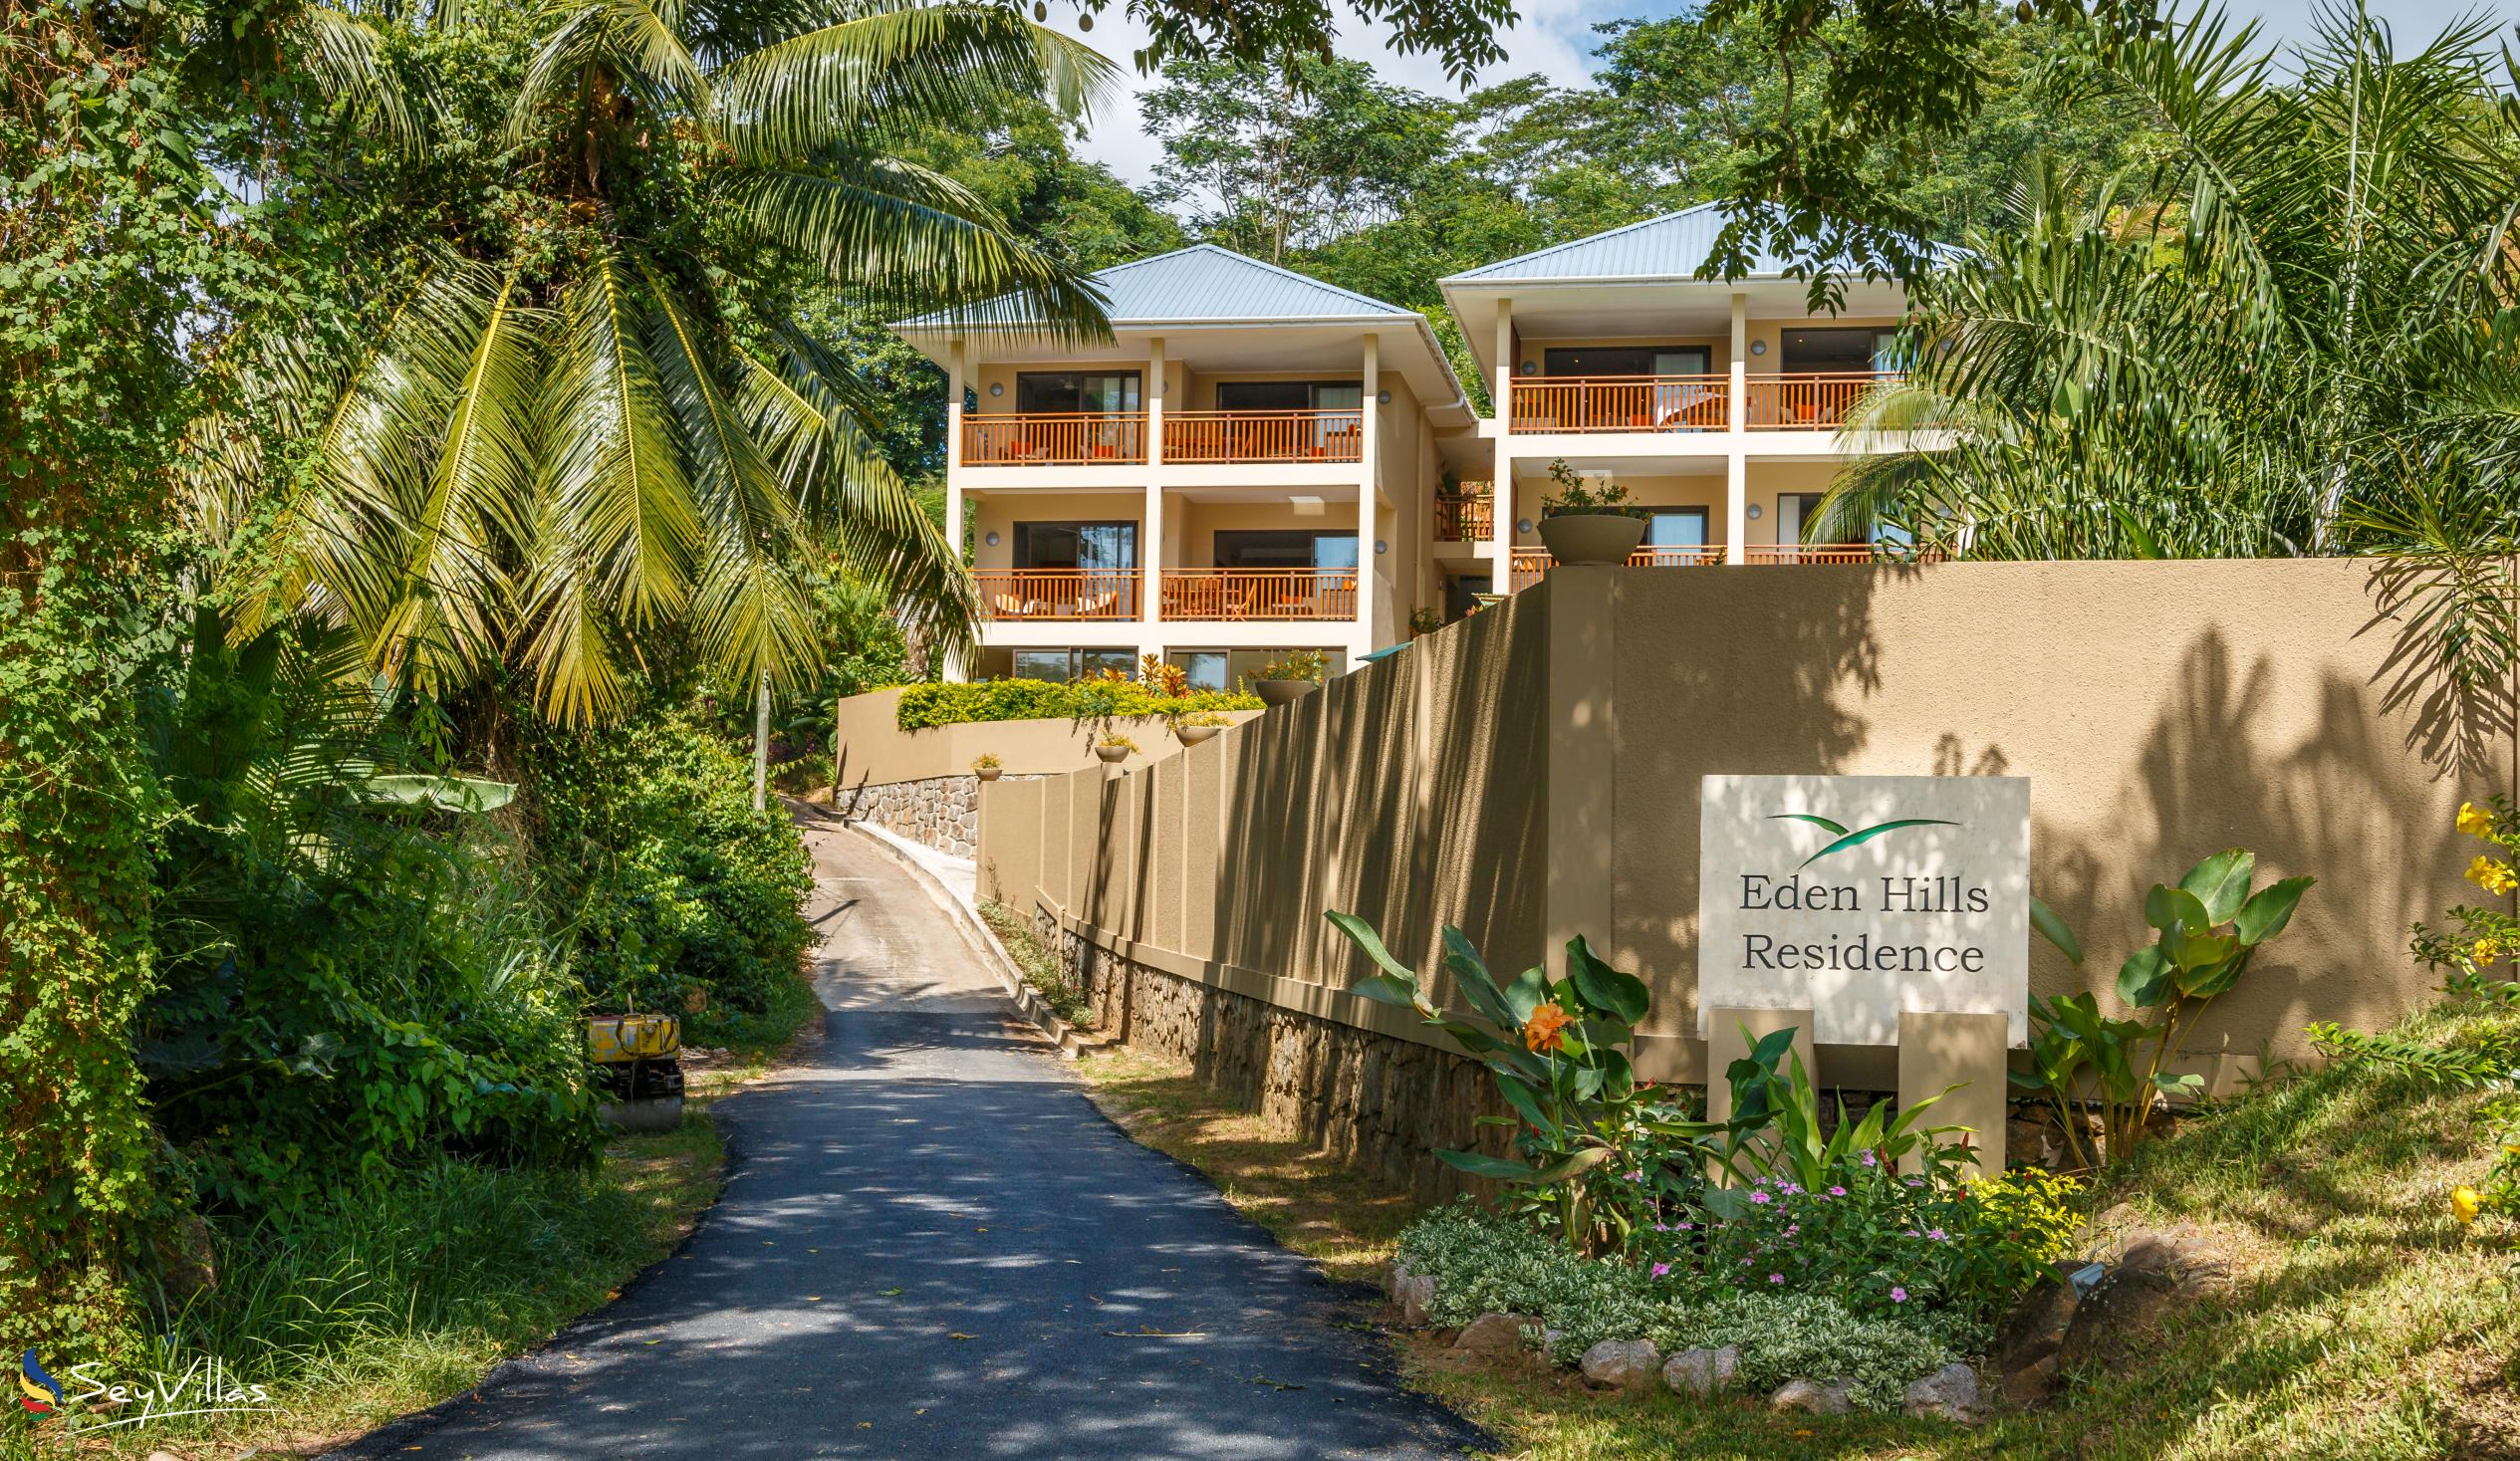 Foto 21: Eden Hills Residence - Aussenbereich - Mahé (Seychellen)